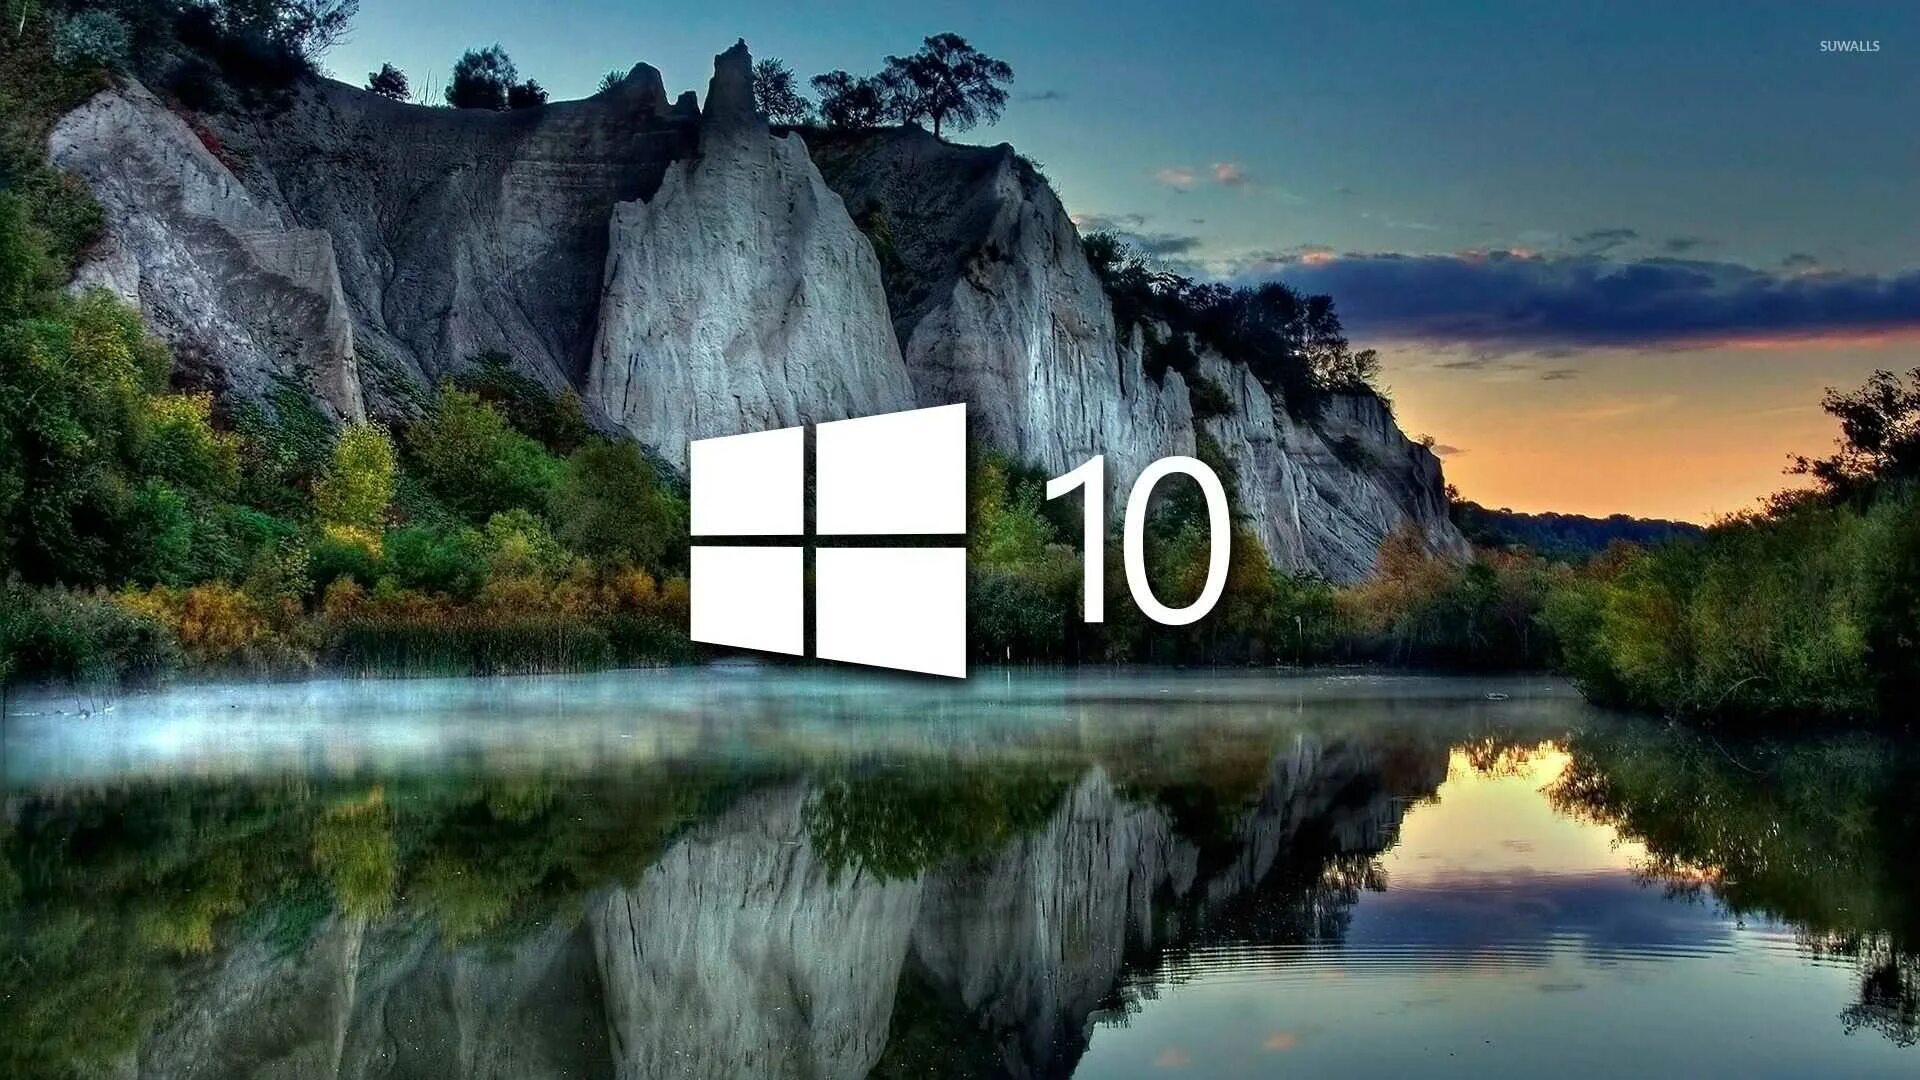 Красивая заставка виндовс 10. Фоновый рисунок виндовс 10. Рисунок рабочего стола Windows 10. Картинка для фона рабочего стола Windows 10. Просто главный экран